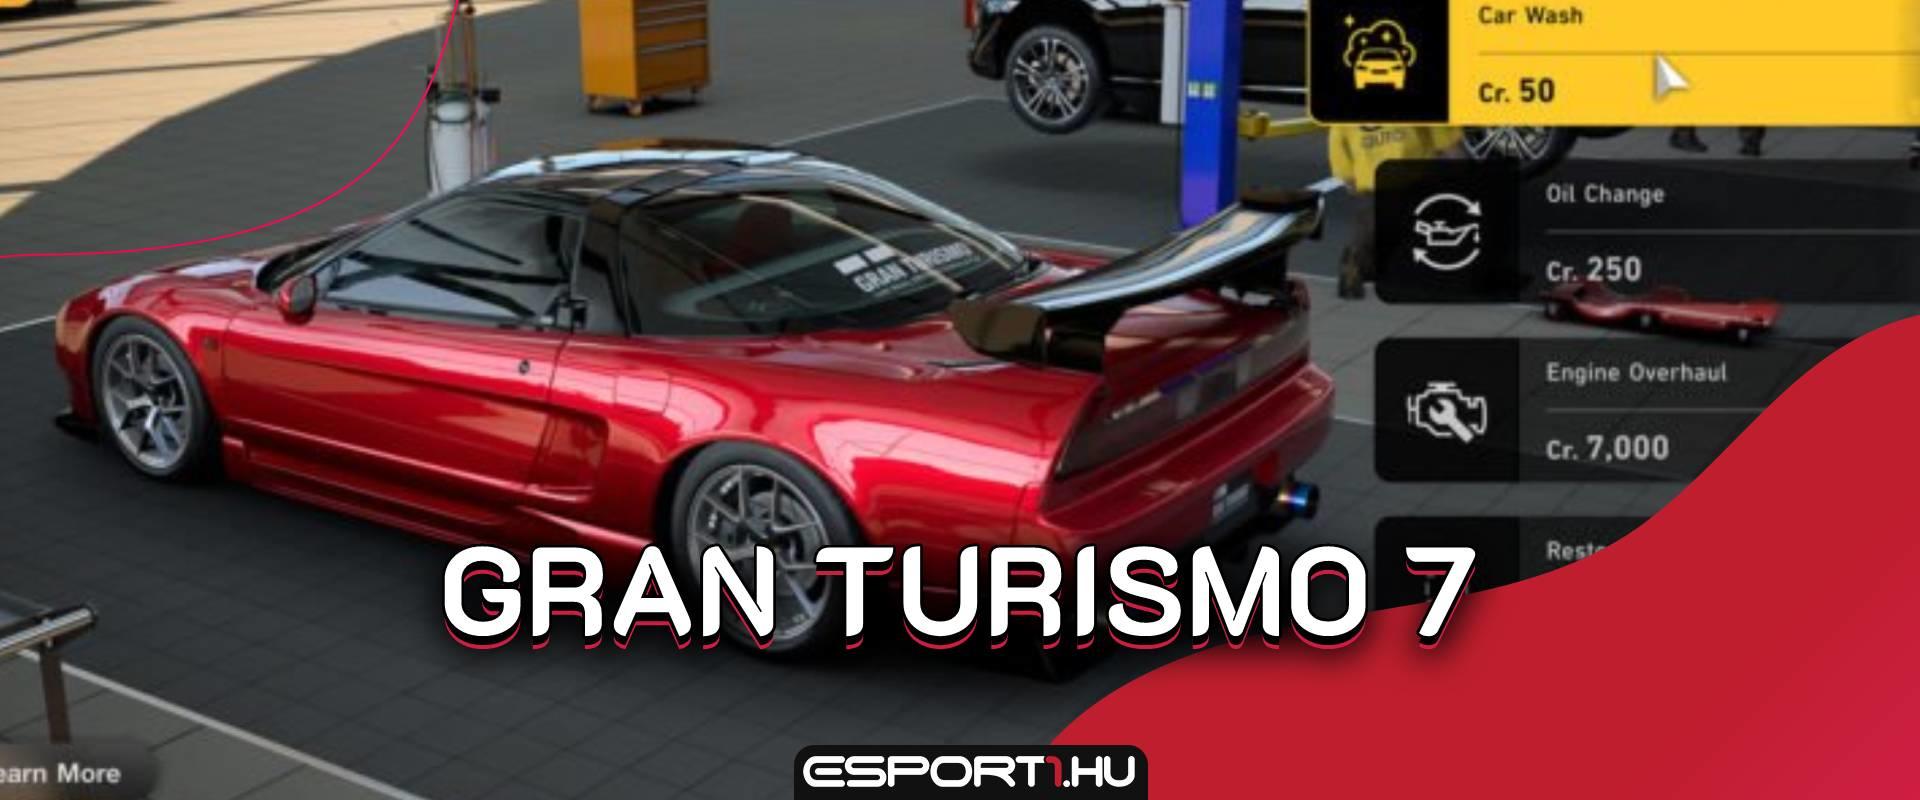 Hivatalos: Jövő márciusban érkezik a Gran Turismo 7!